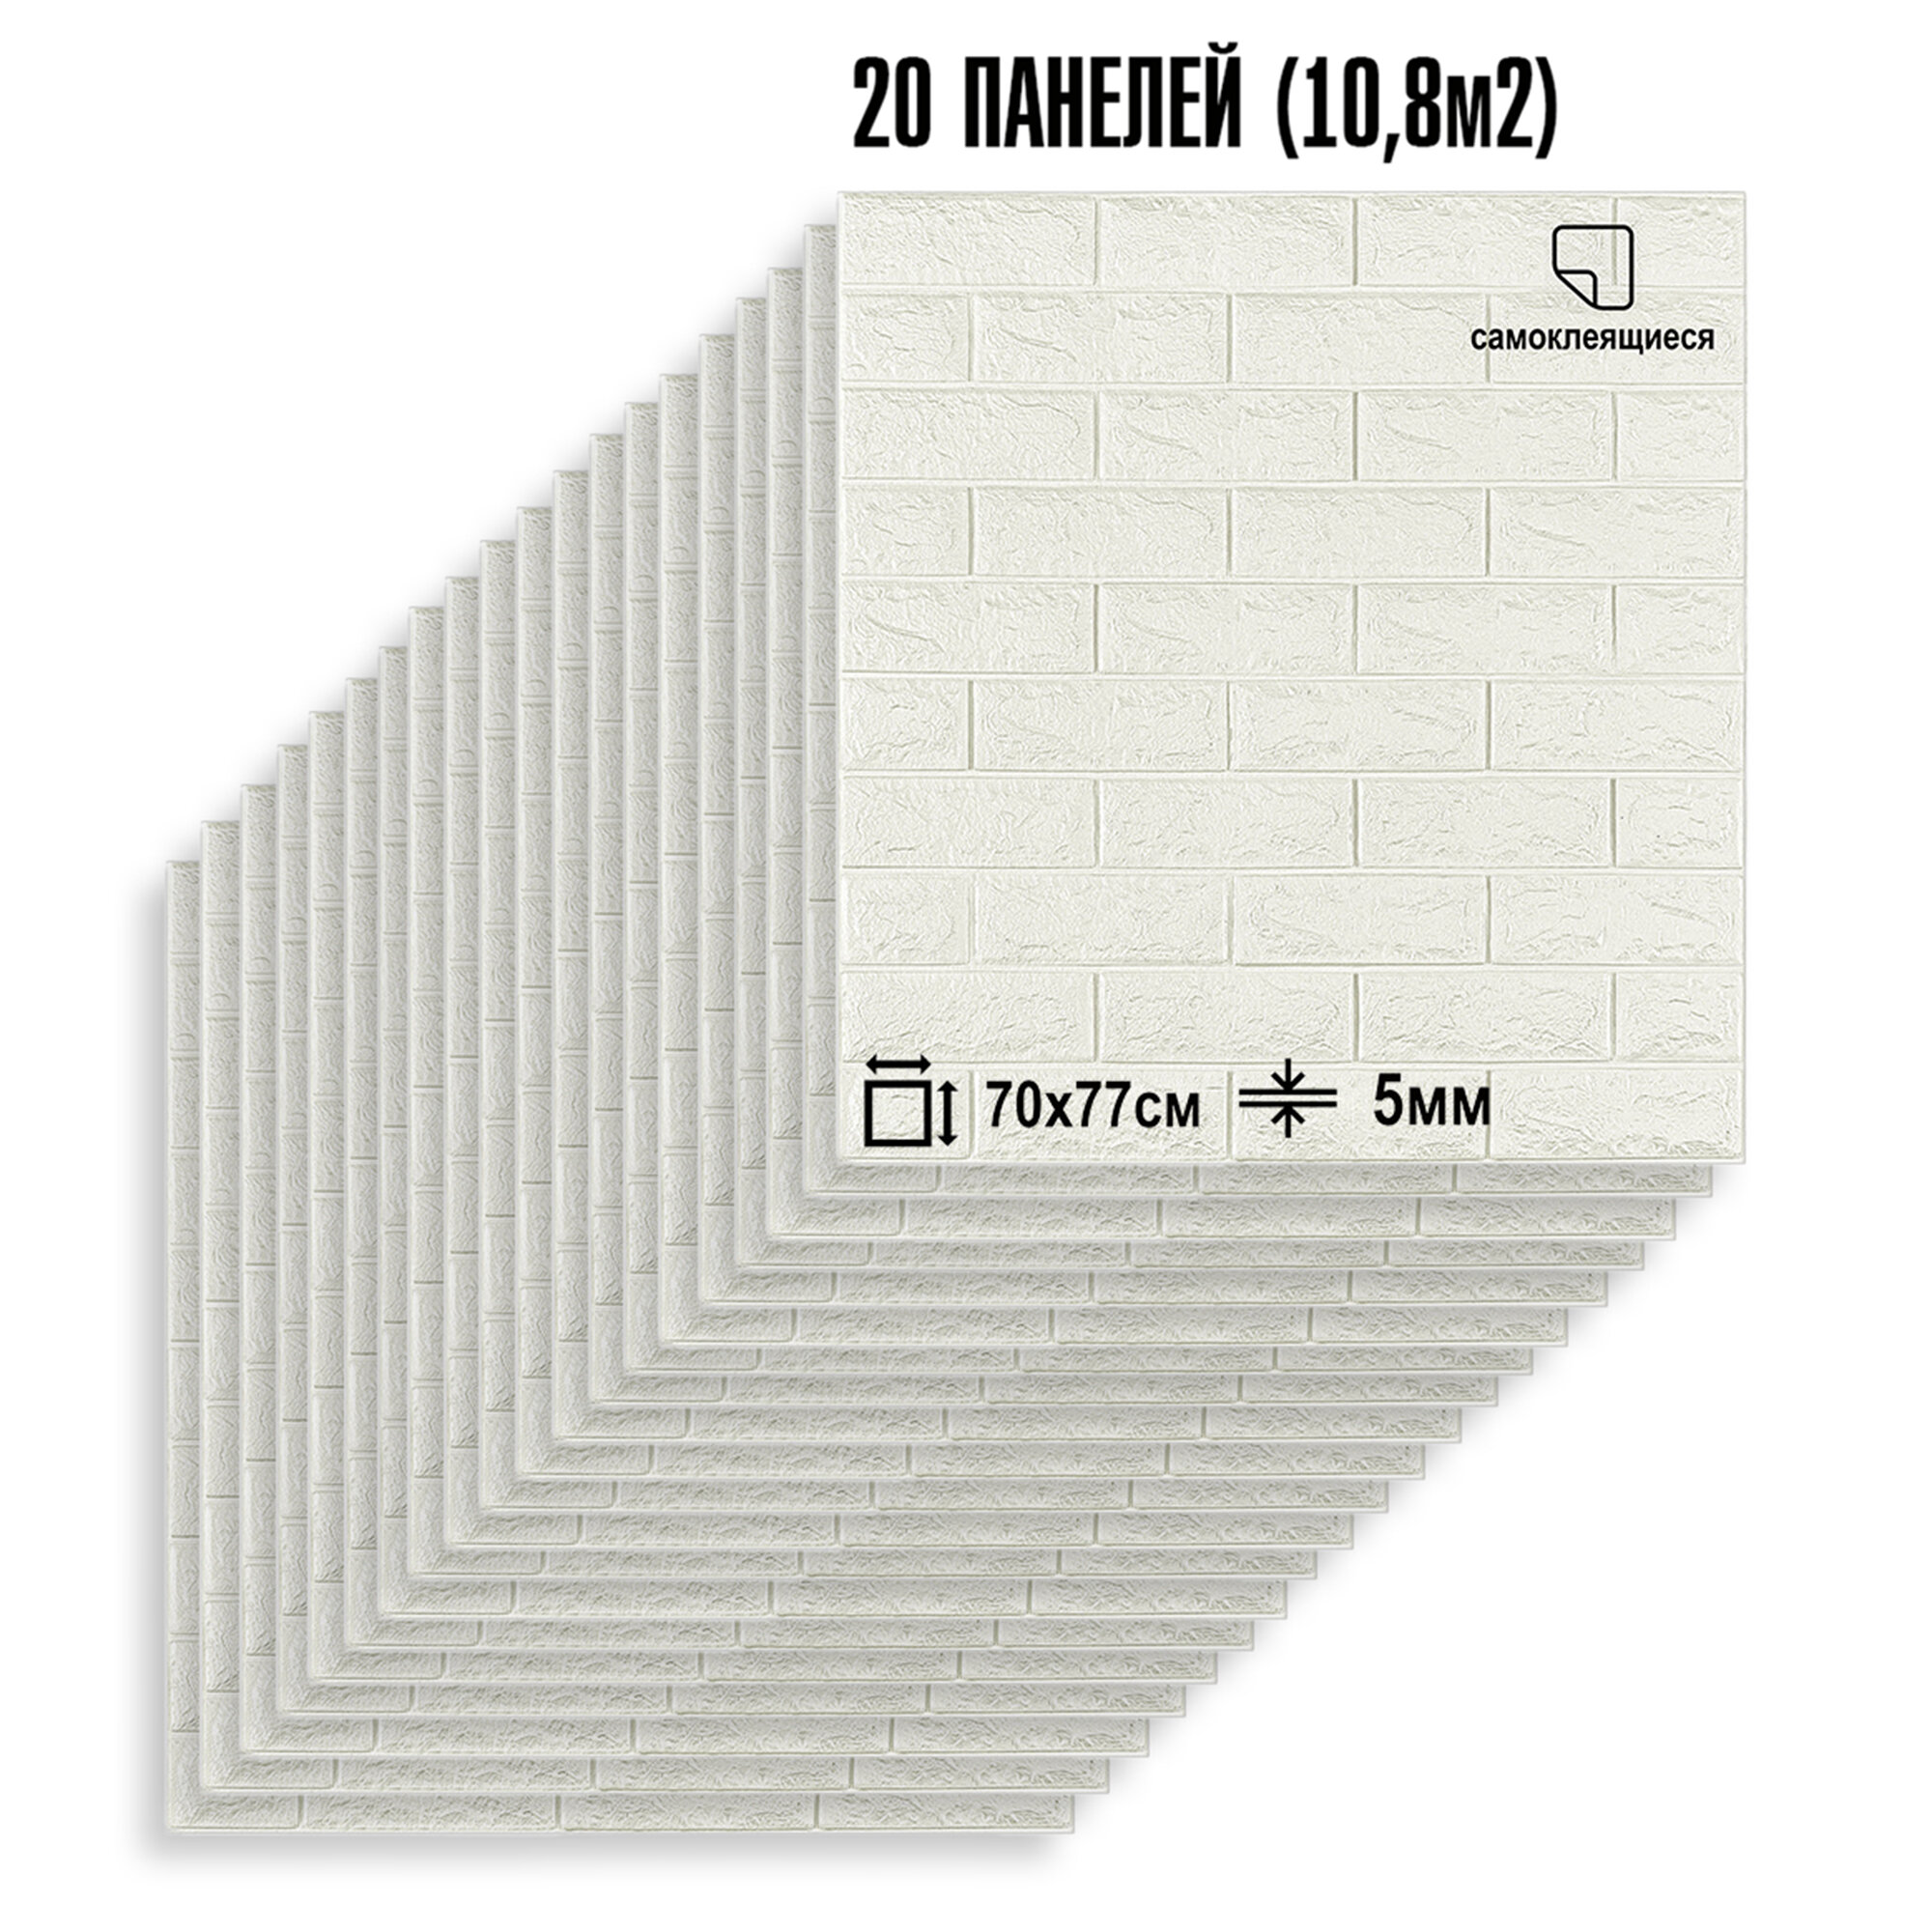 Мега Комплект 20 шт 3D панелей для стен LAKO DECOR, коллекция Классический кирпич Белый, 70x77см, толщина 6мм